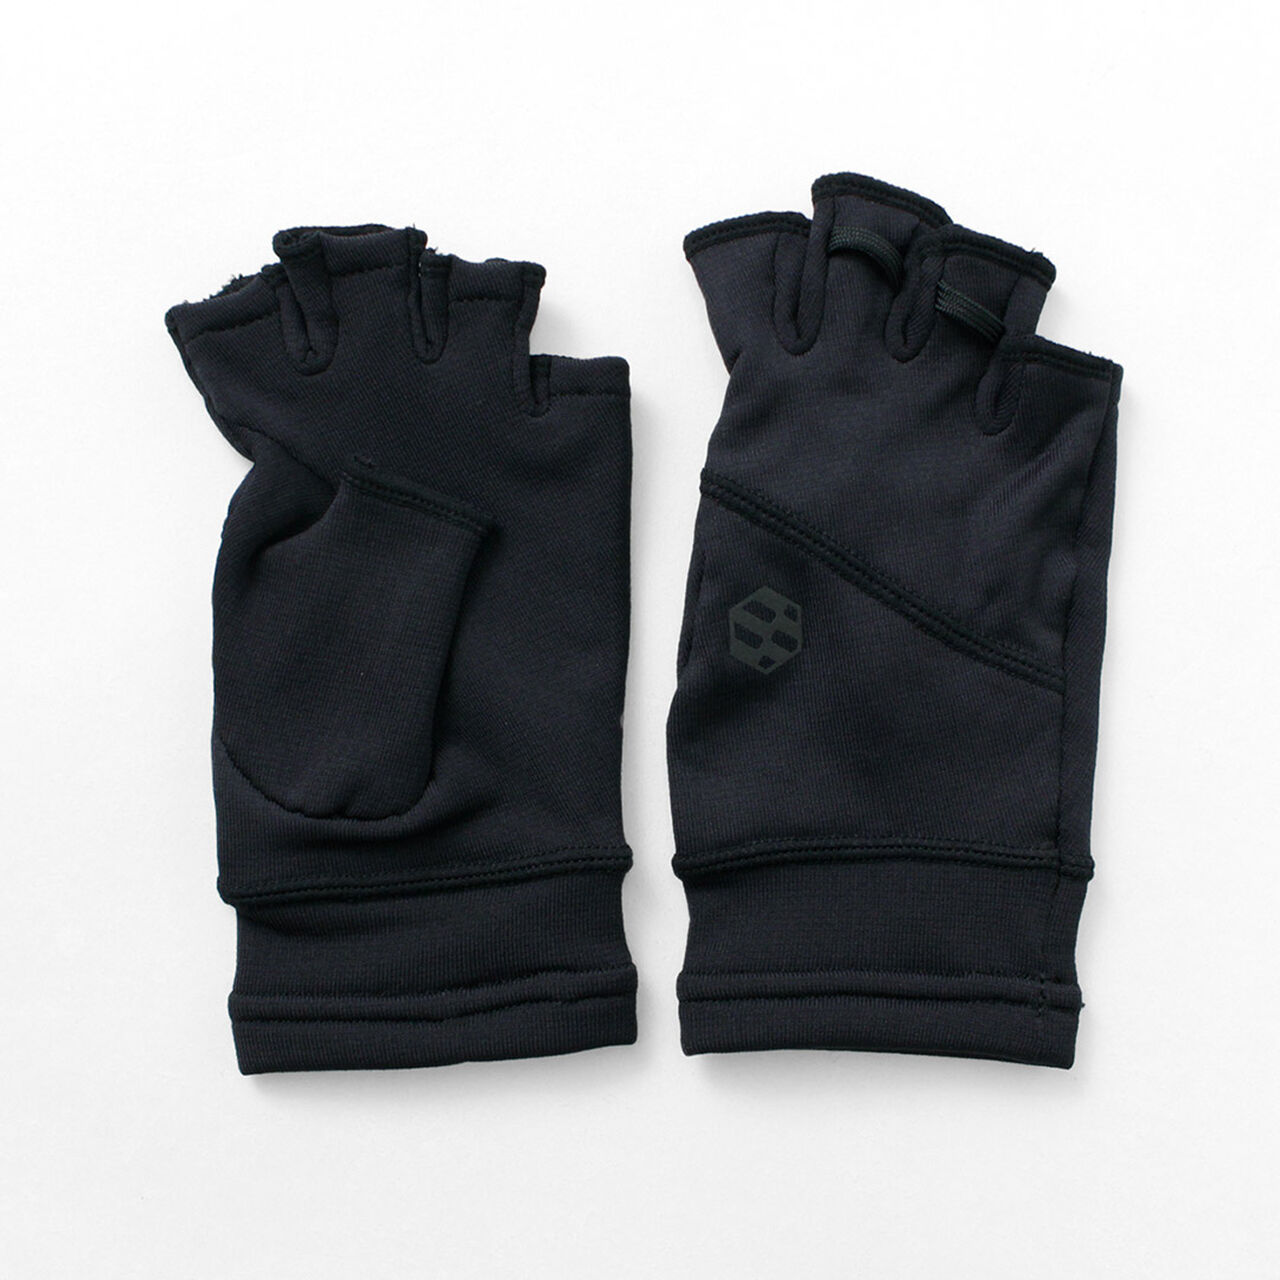 Hobo Half Finger Grid gloves,Black, large image number 0